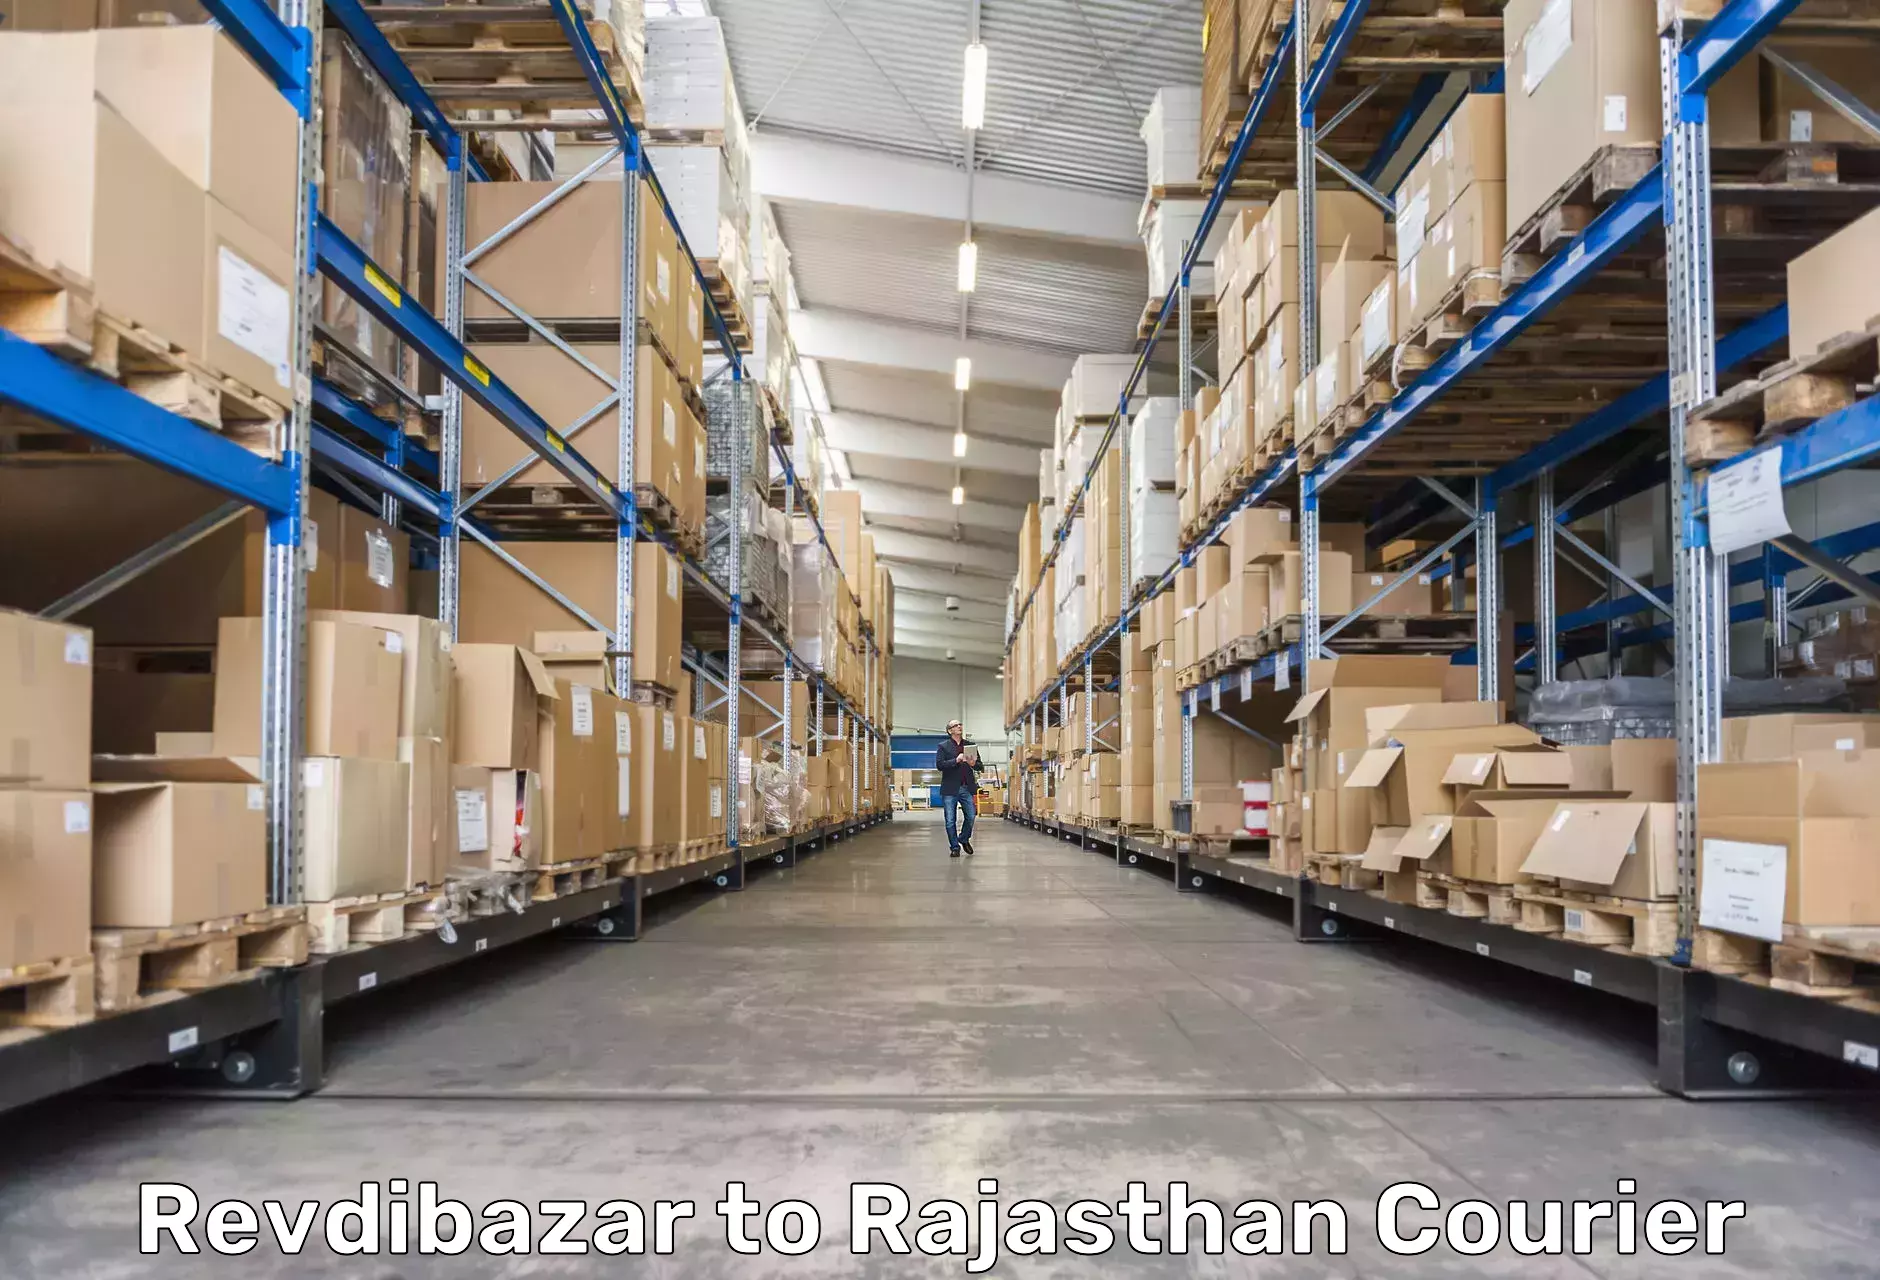 Express logistics providers Revdibazar to Sultana